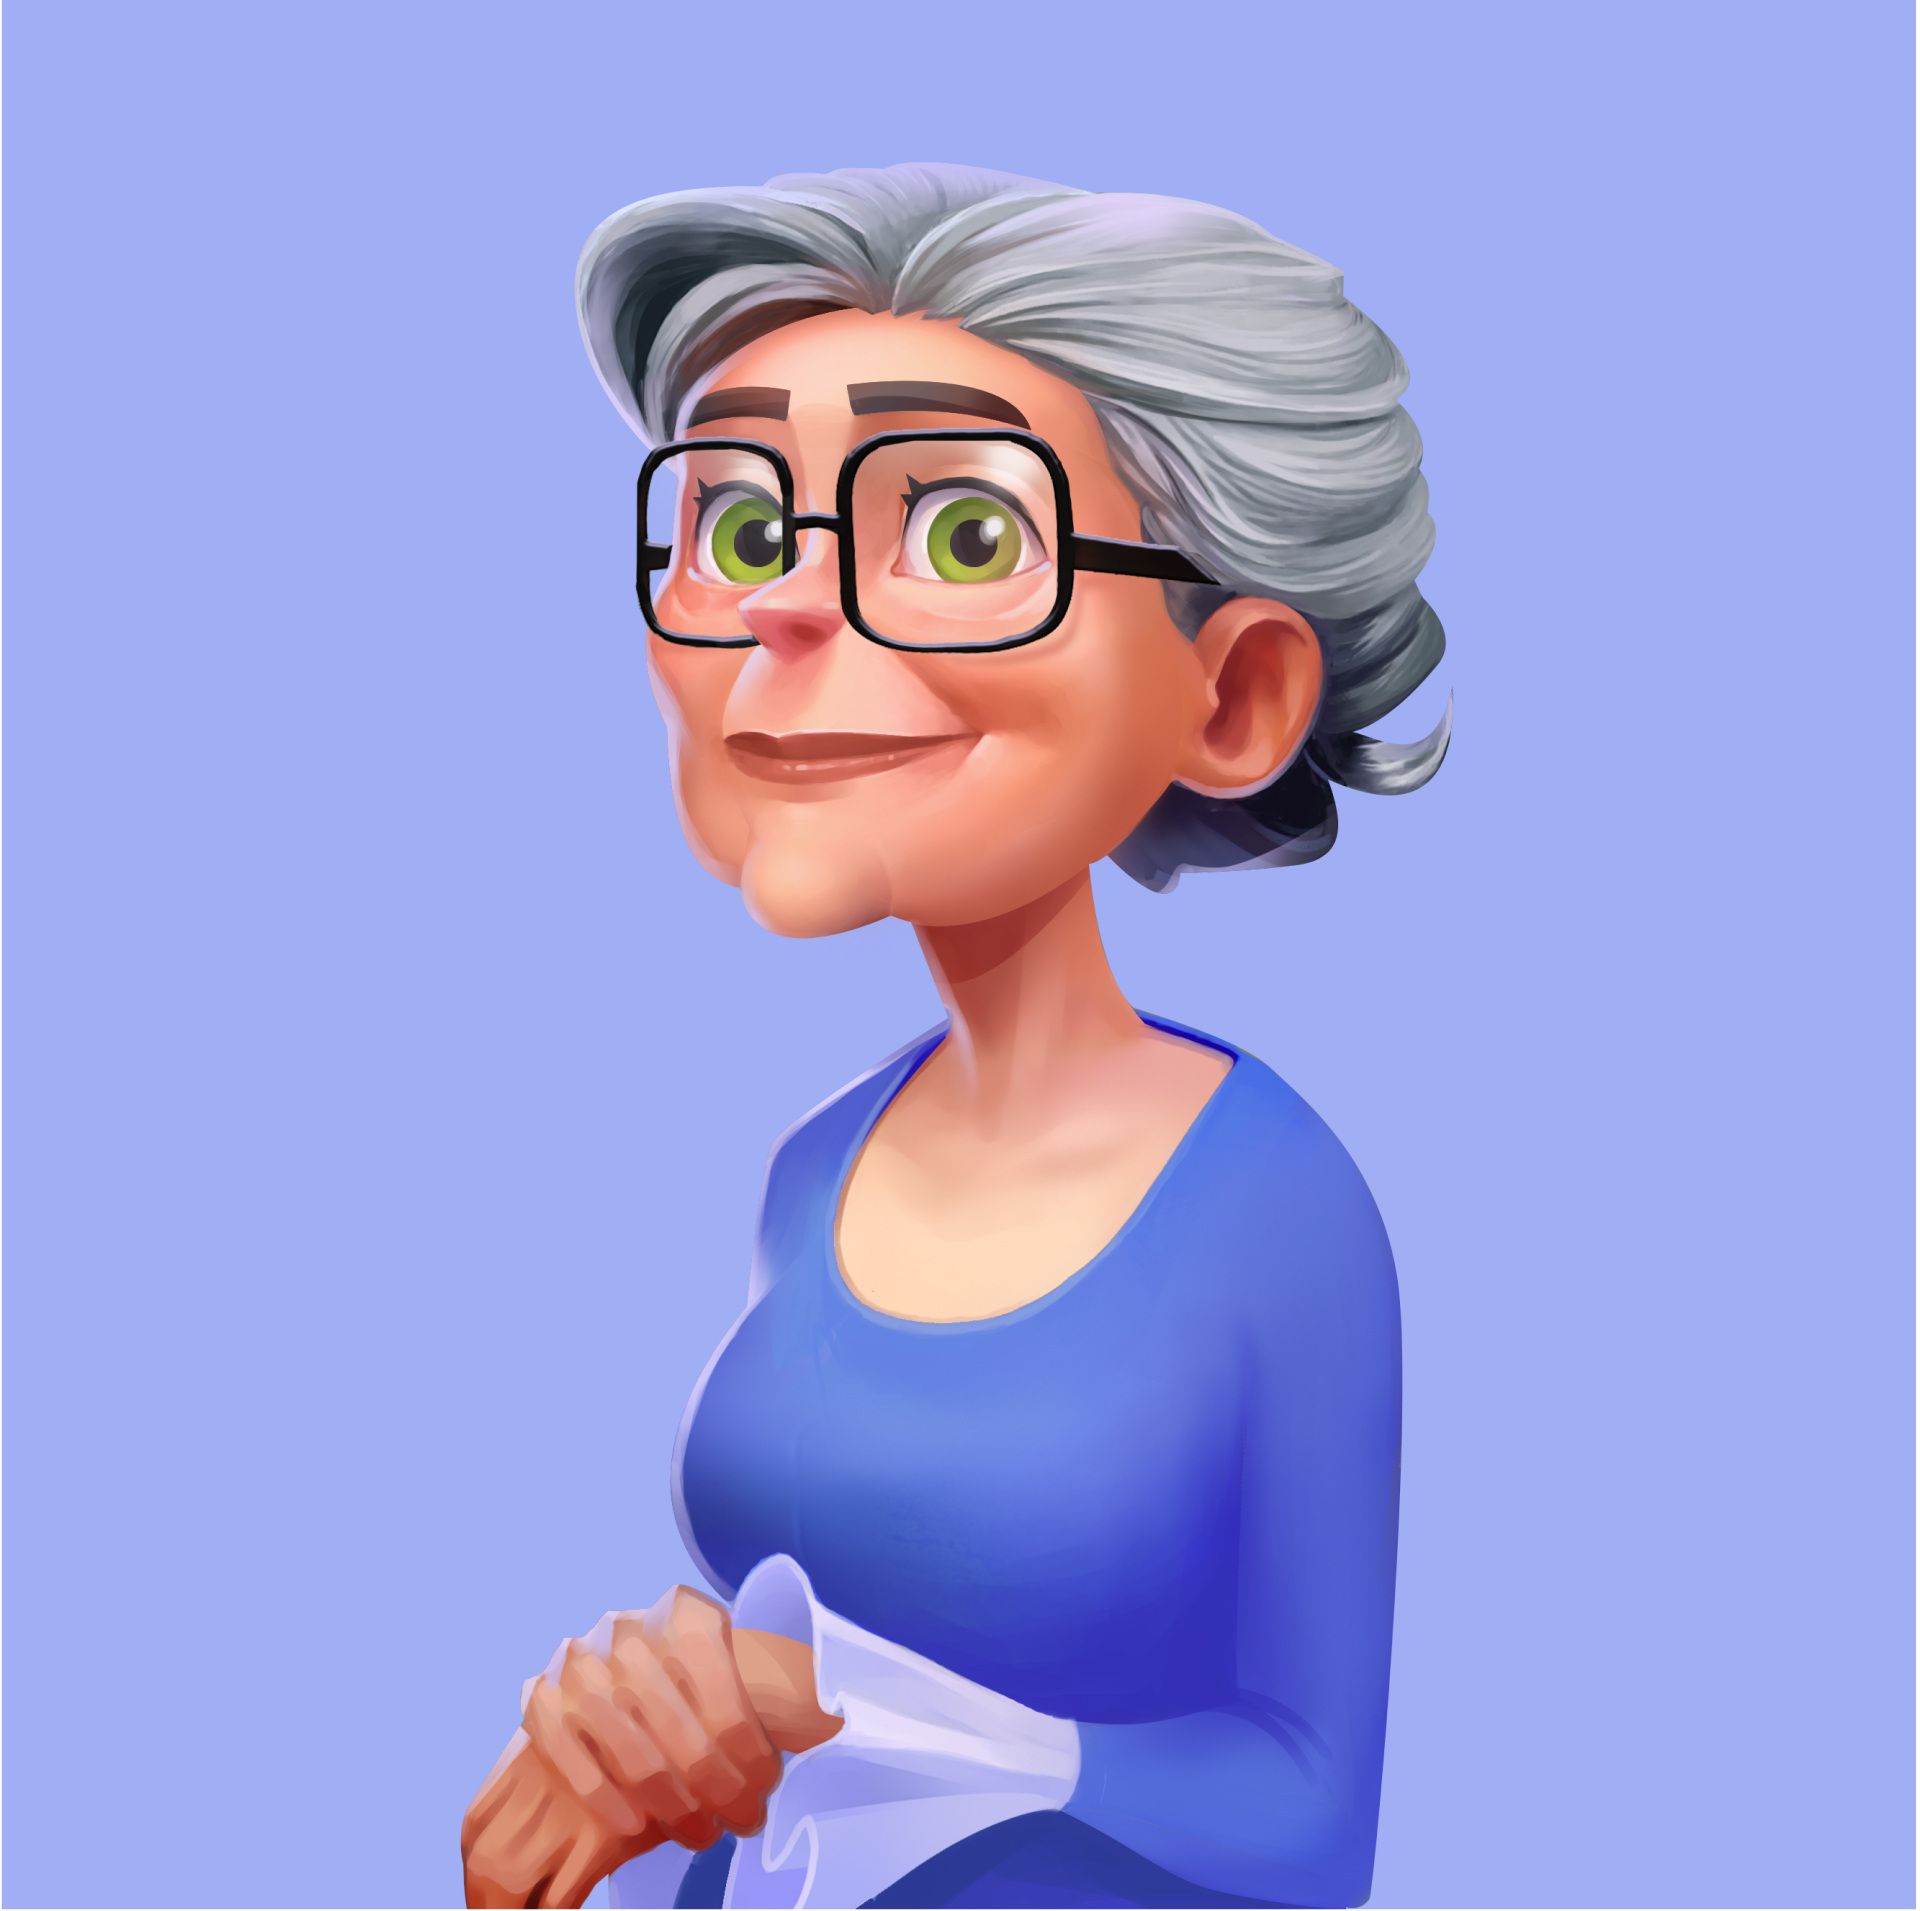 Grandma in a blue sweater